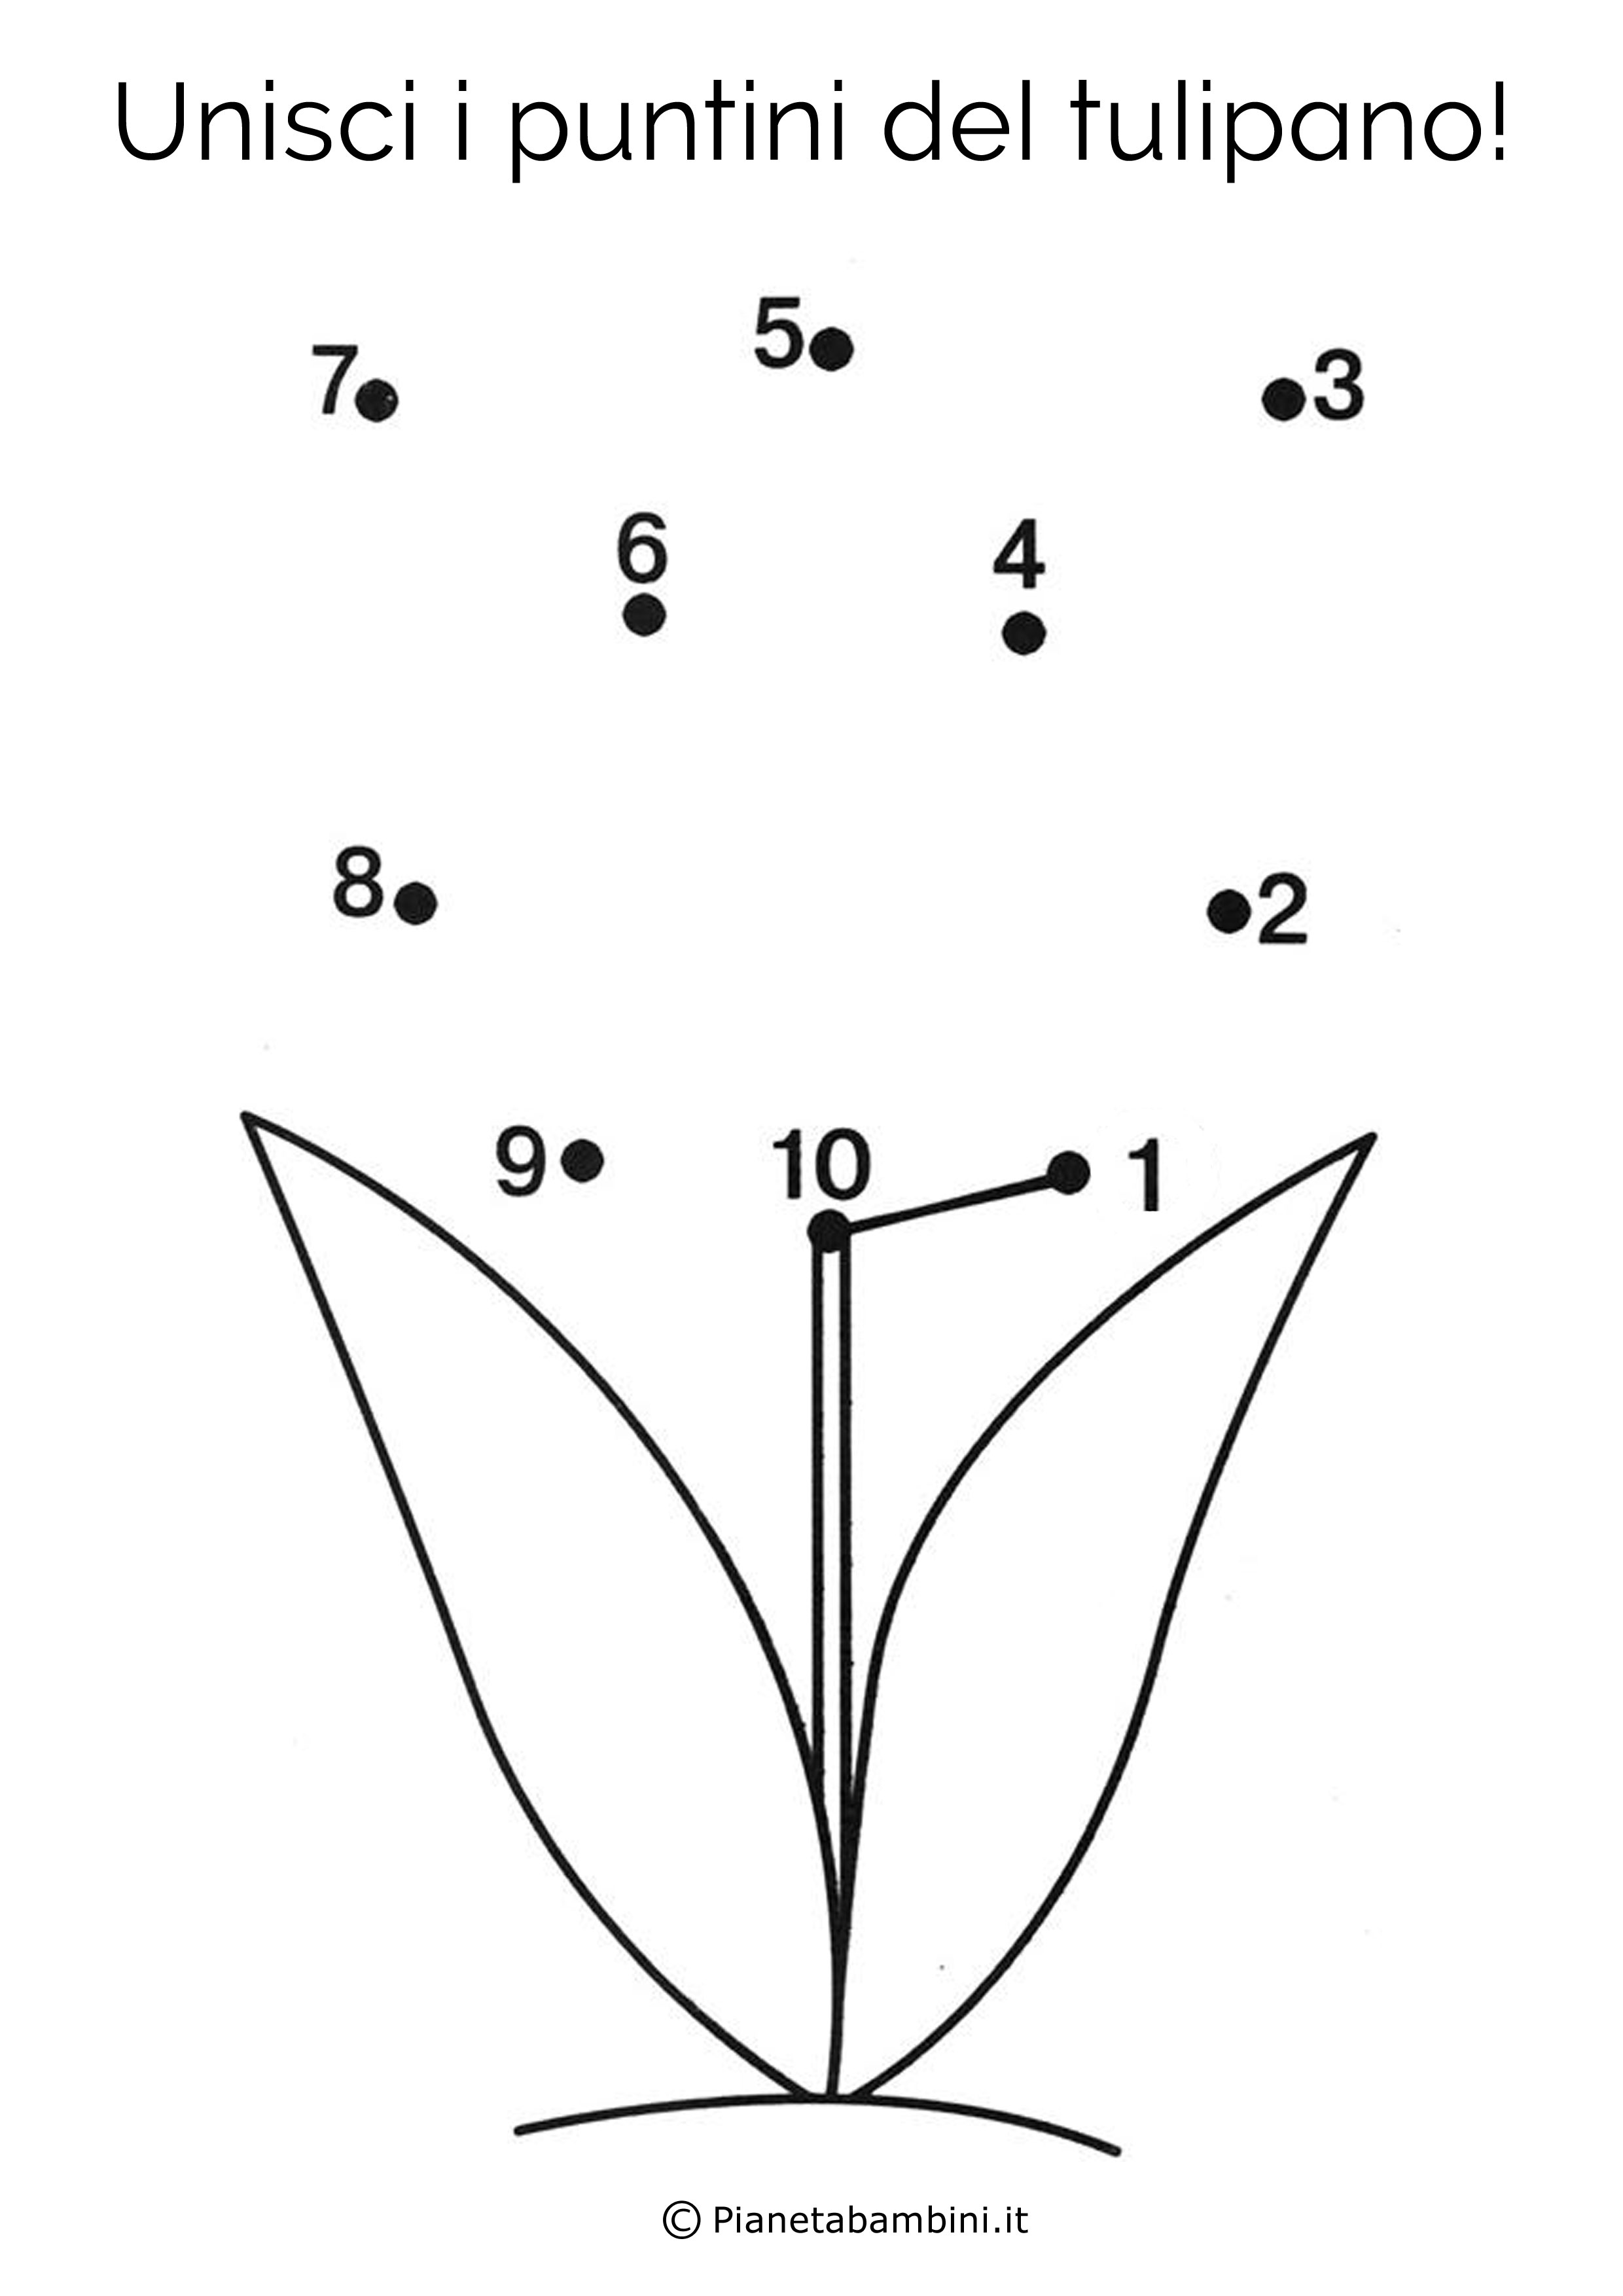 Disegno unisci i puntini tulipano